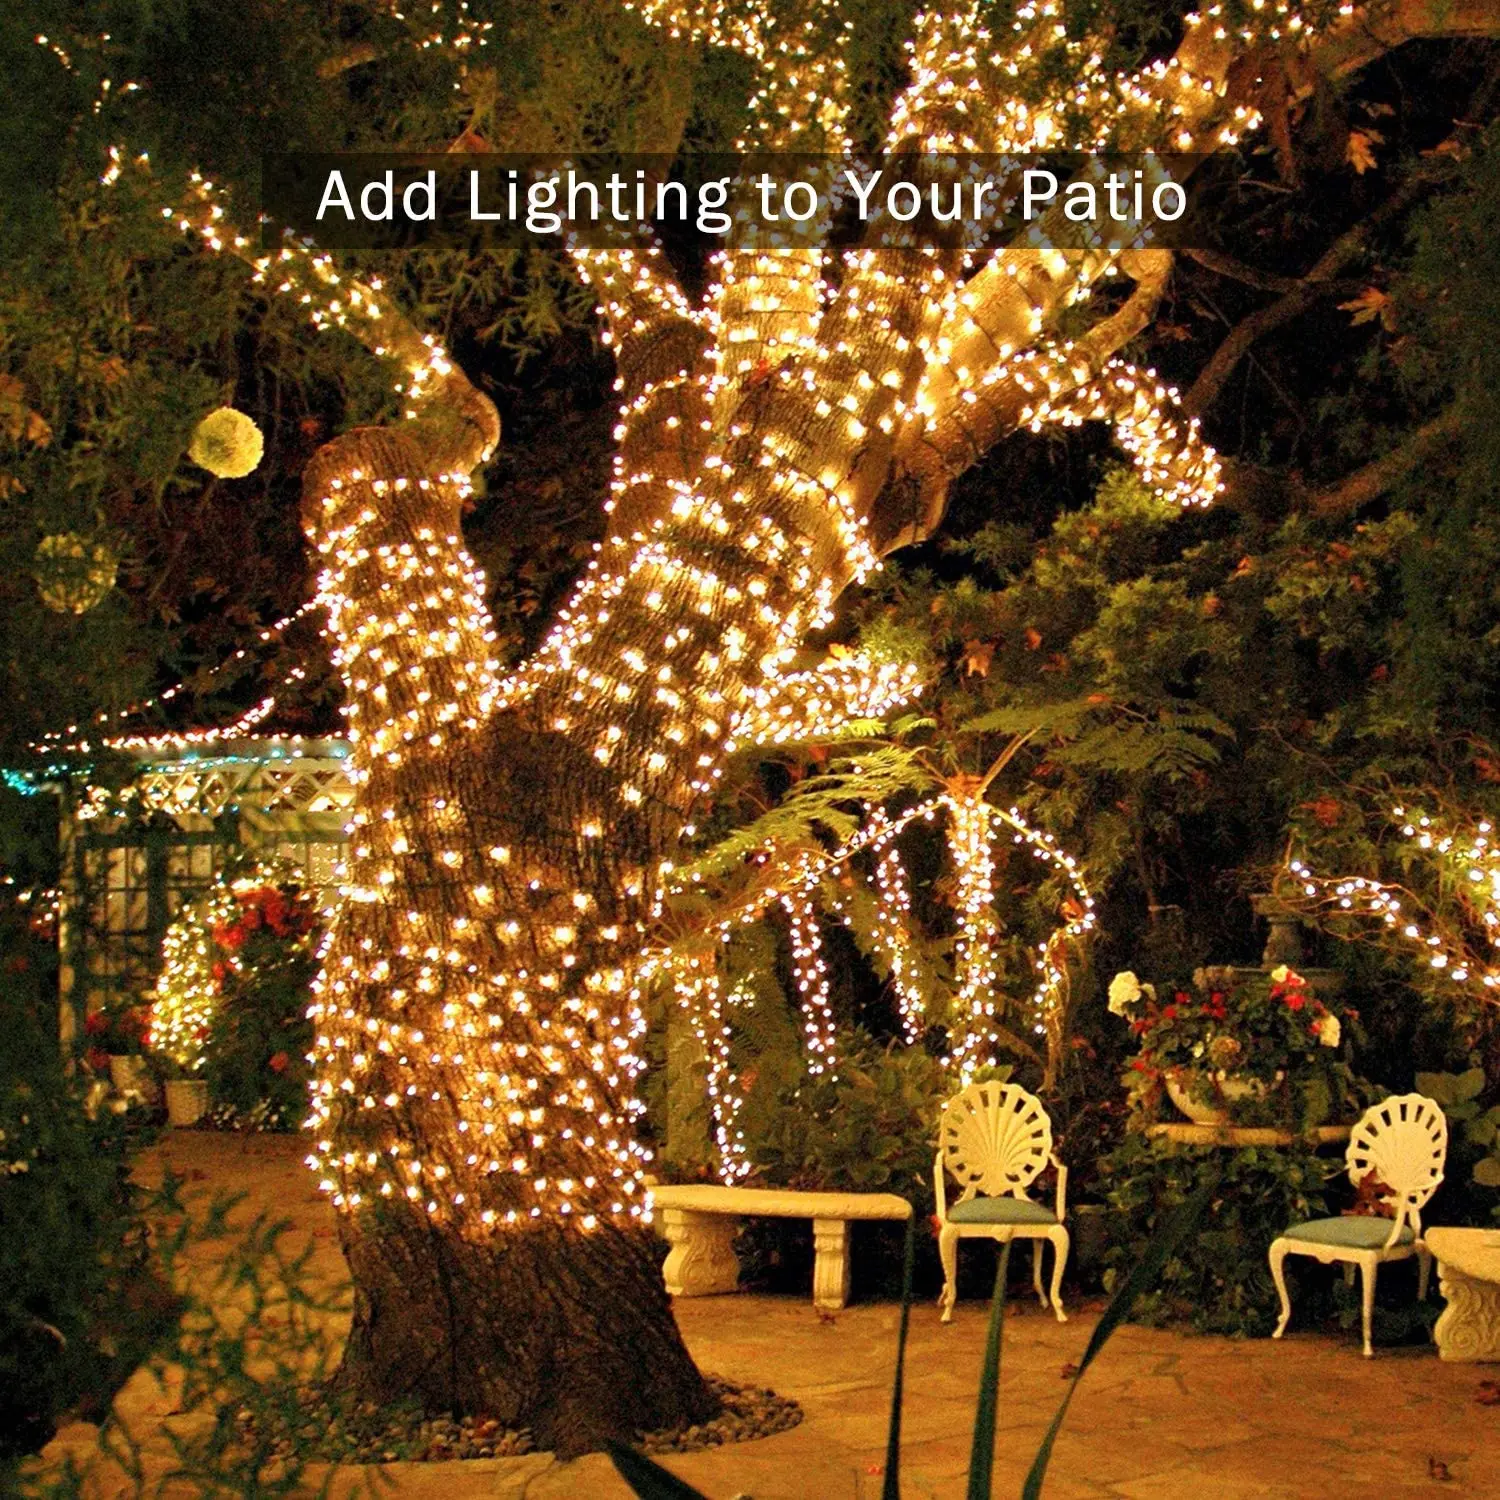 50/100/200 Led Solar Light String Outdoor Waterproof Night Lamp Decor For Holiday Xmas Party Fairy Festoon Garden Garland Lights solar deck lights